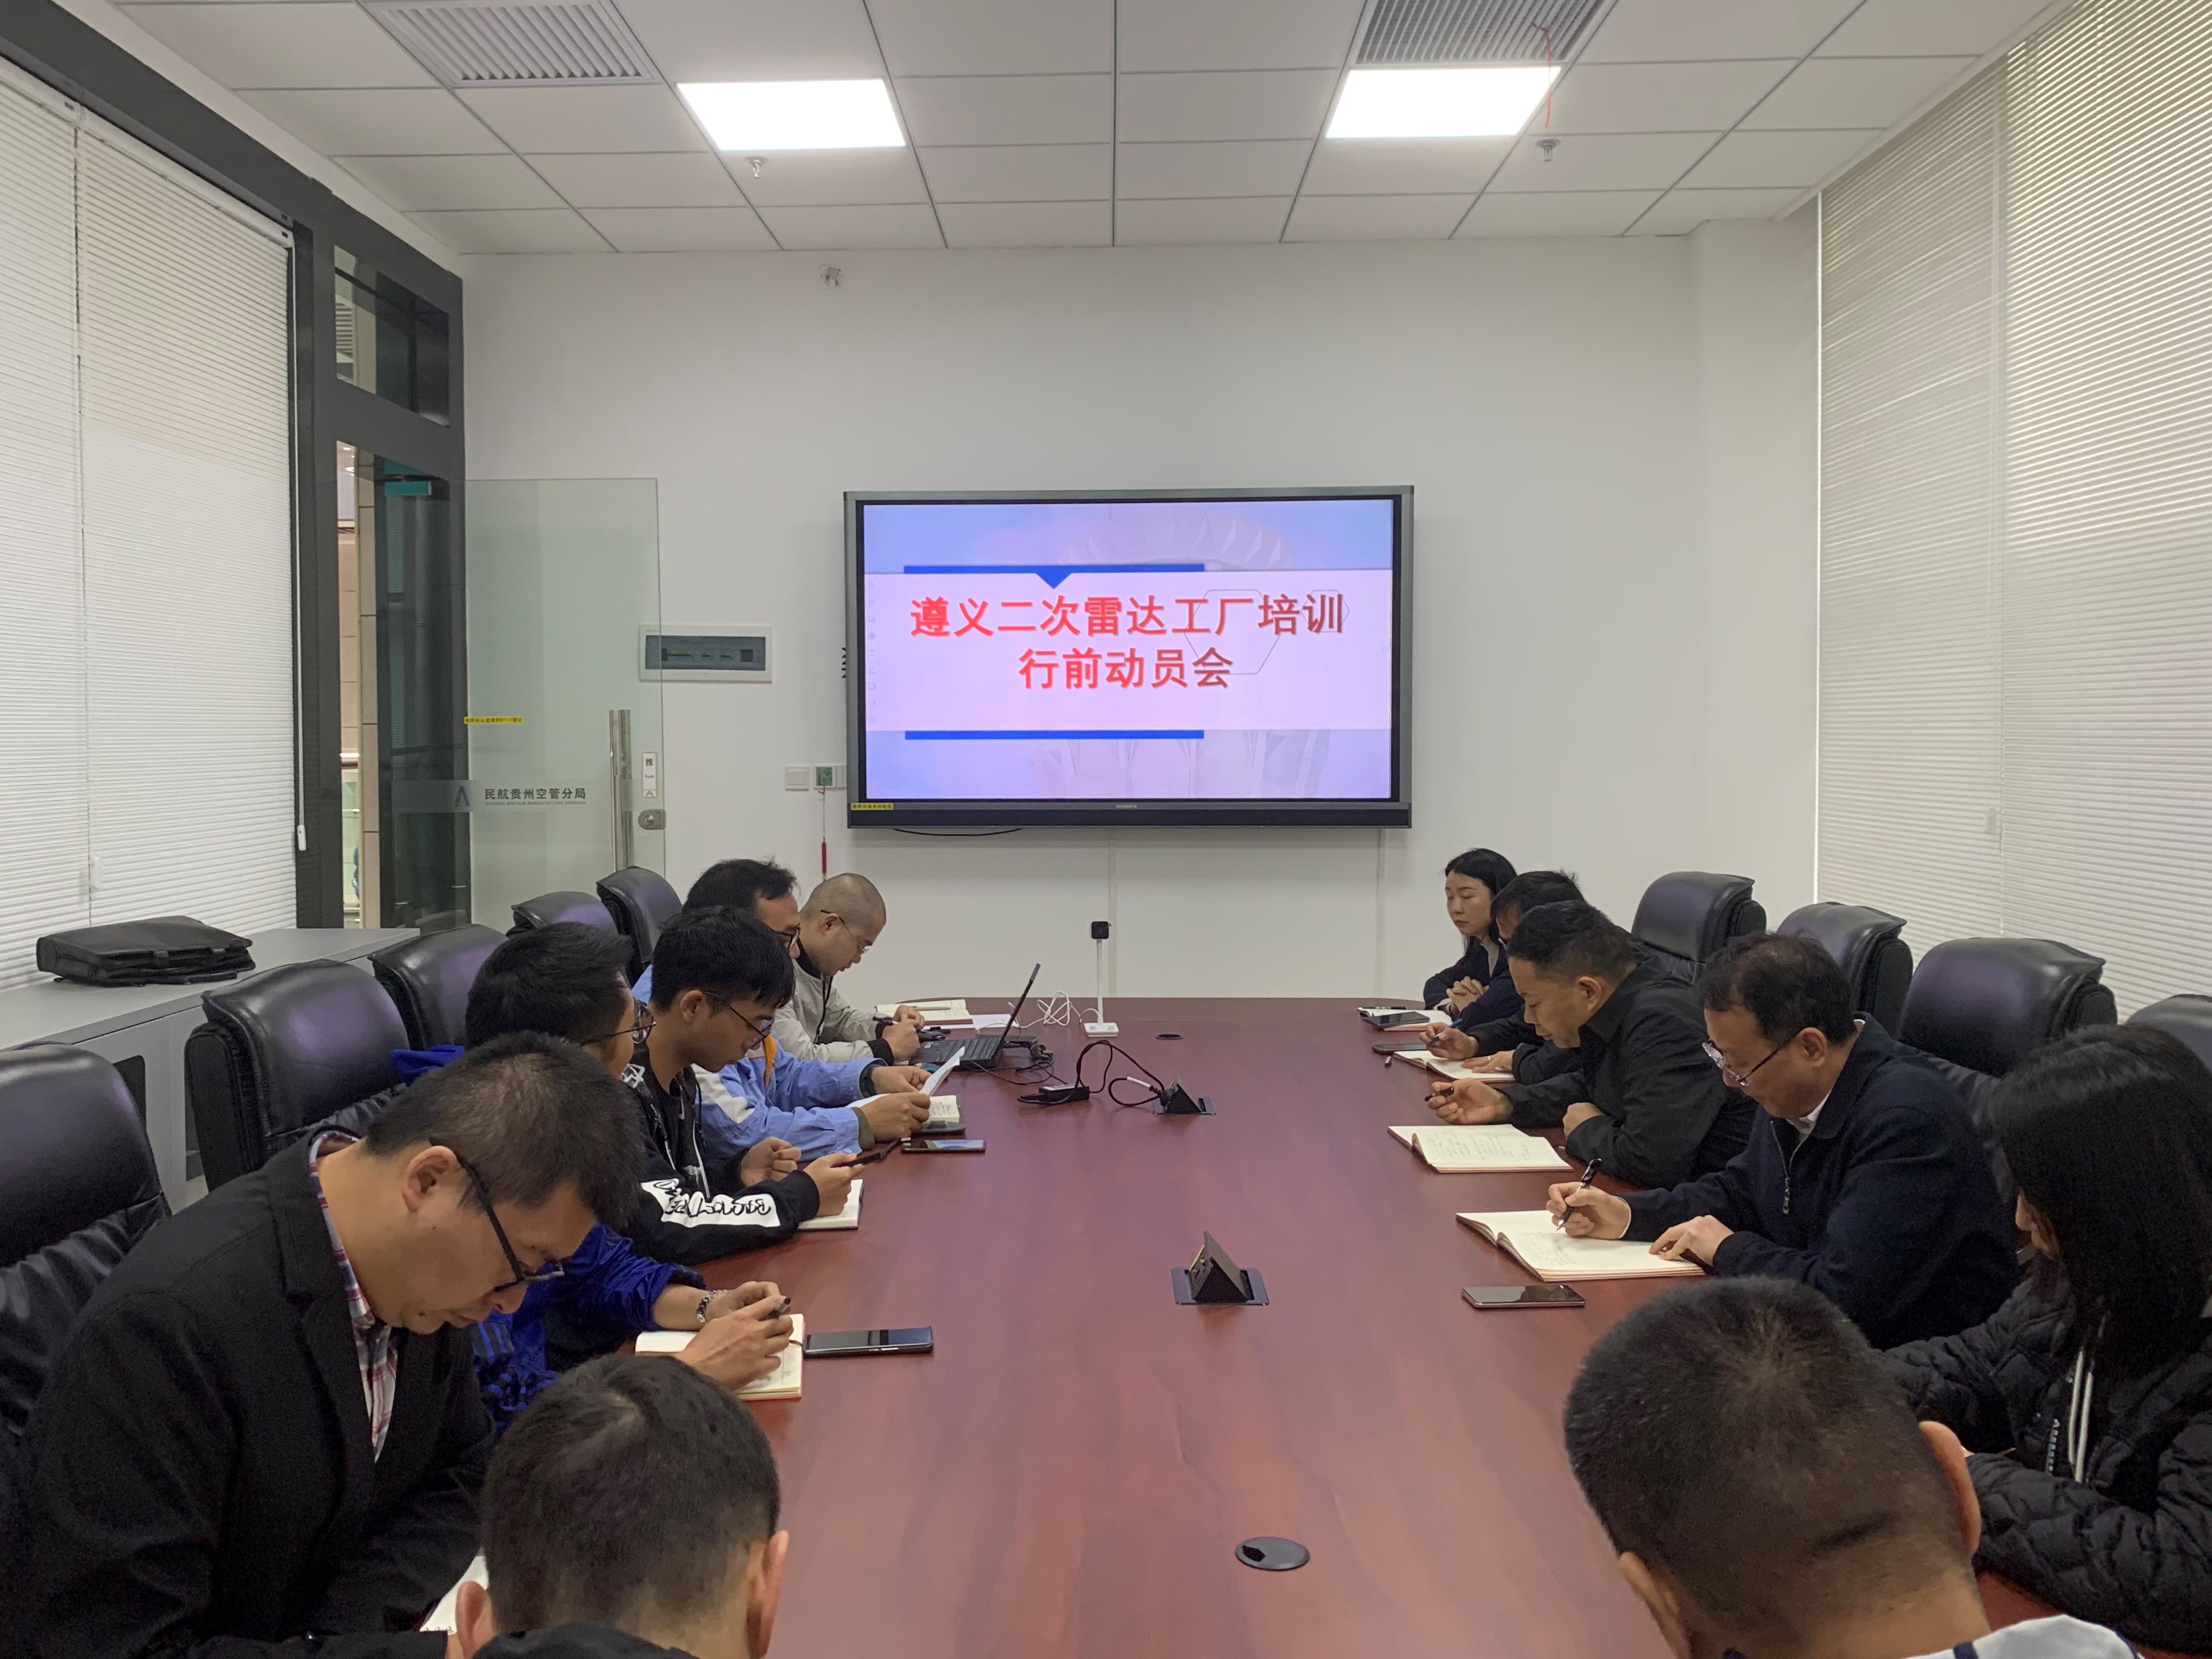 贵州空管分局技术保障部召开遵义二次雷达工厂培训行前动员会